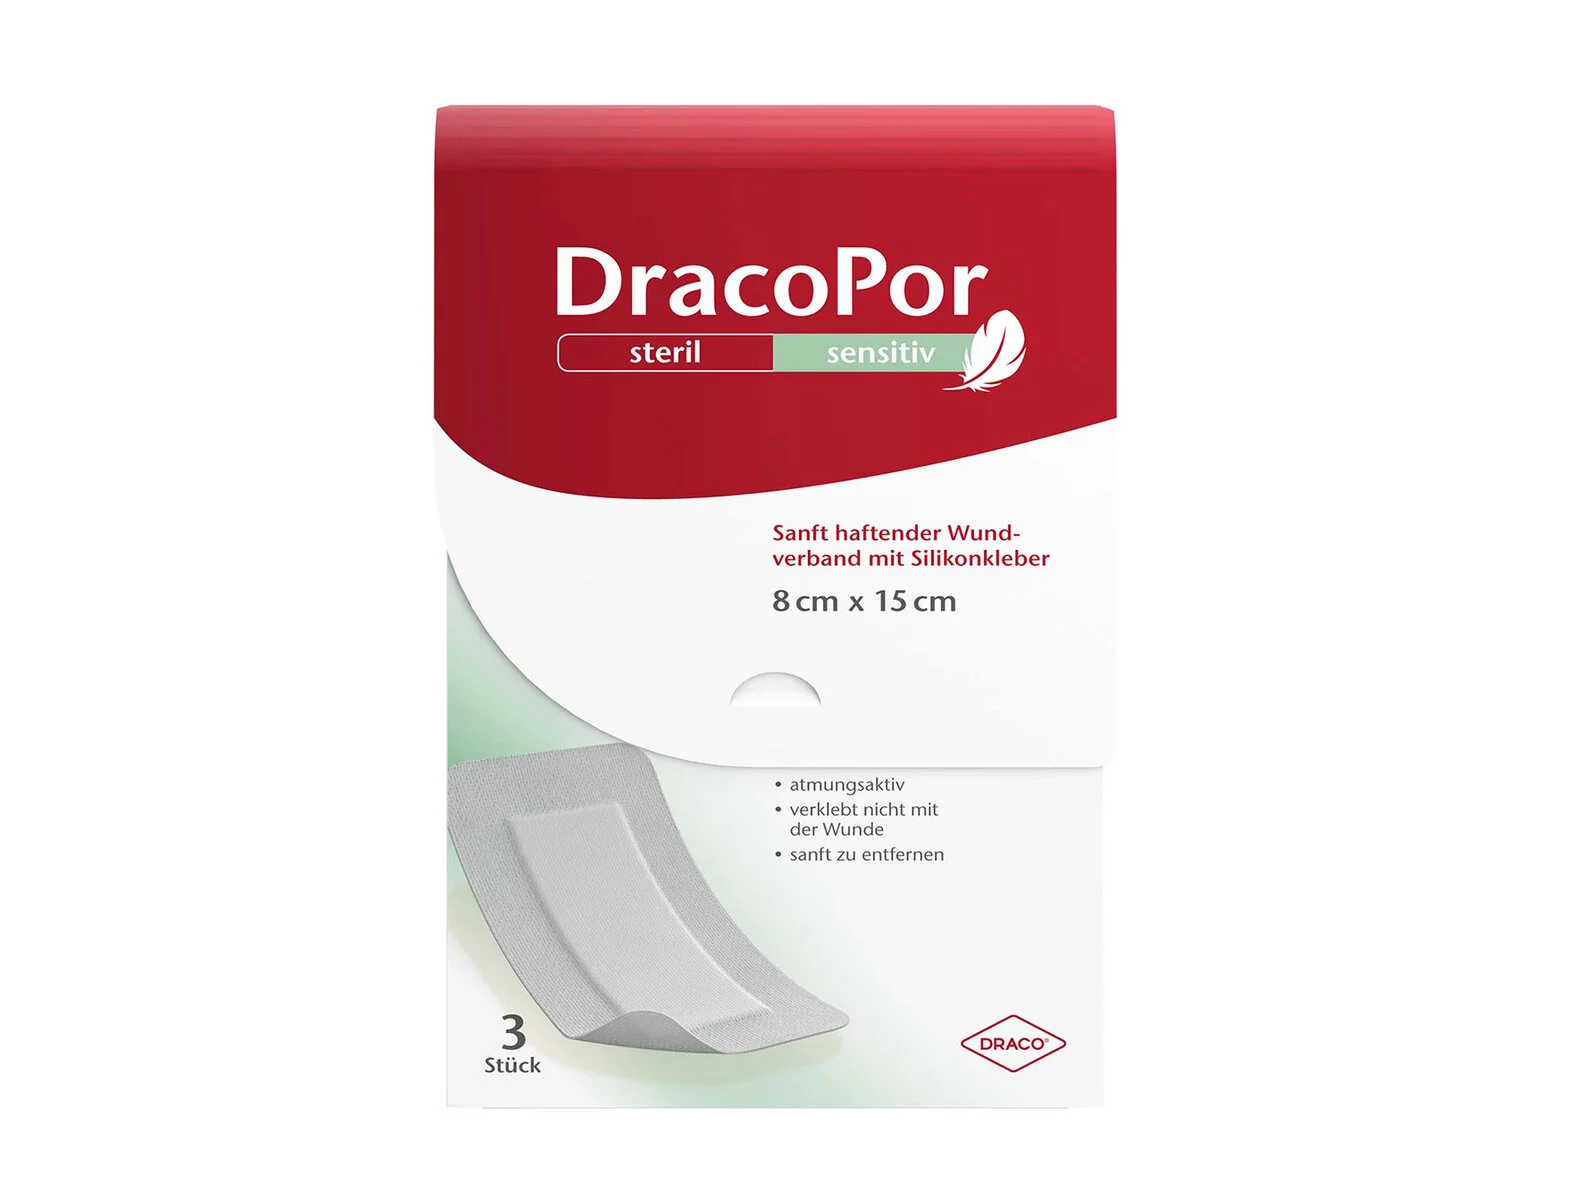 DracoPor sensitiv Große Größe Packshot